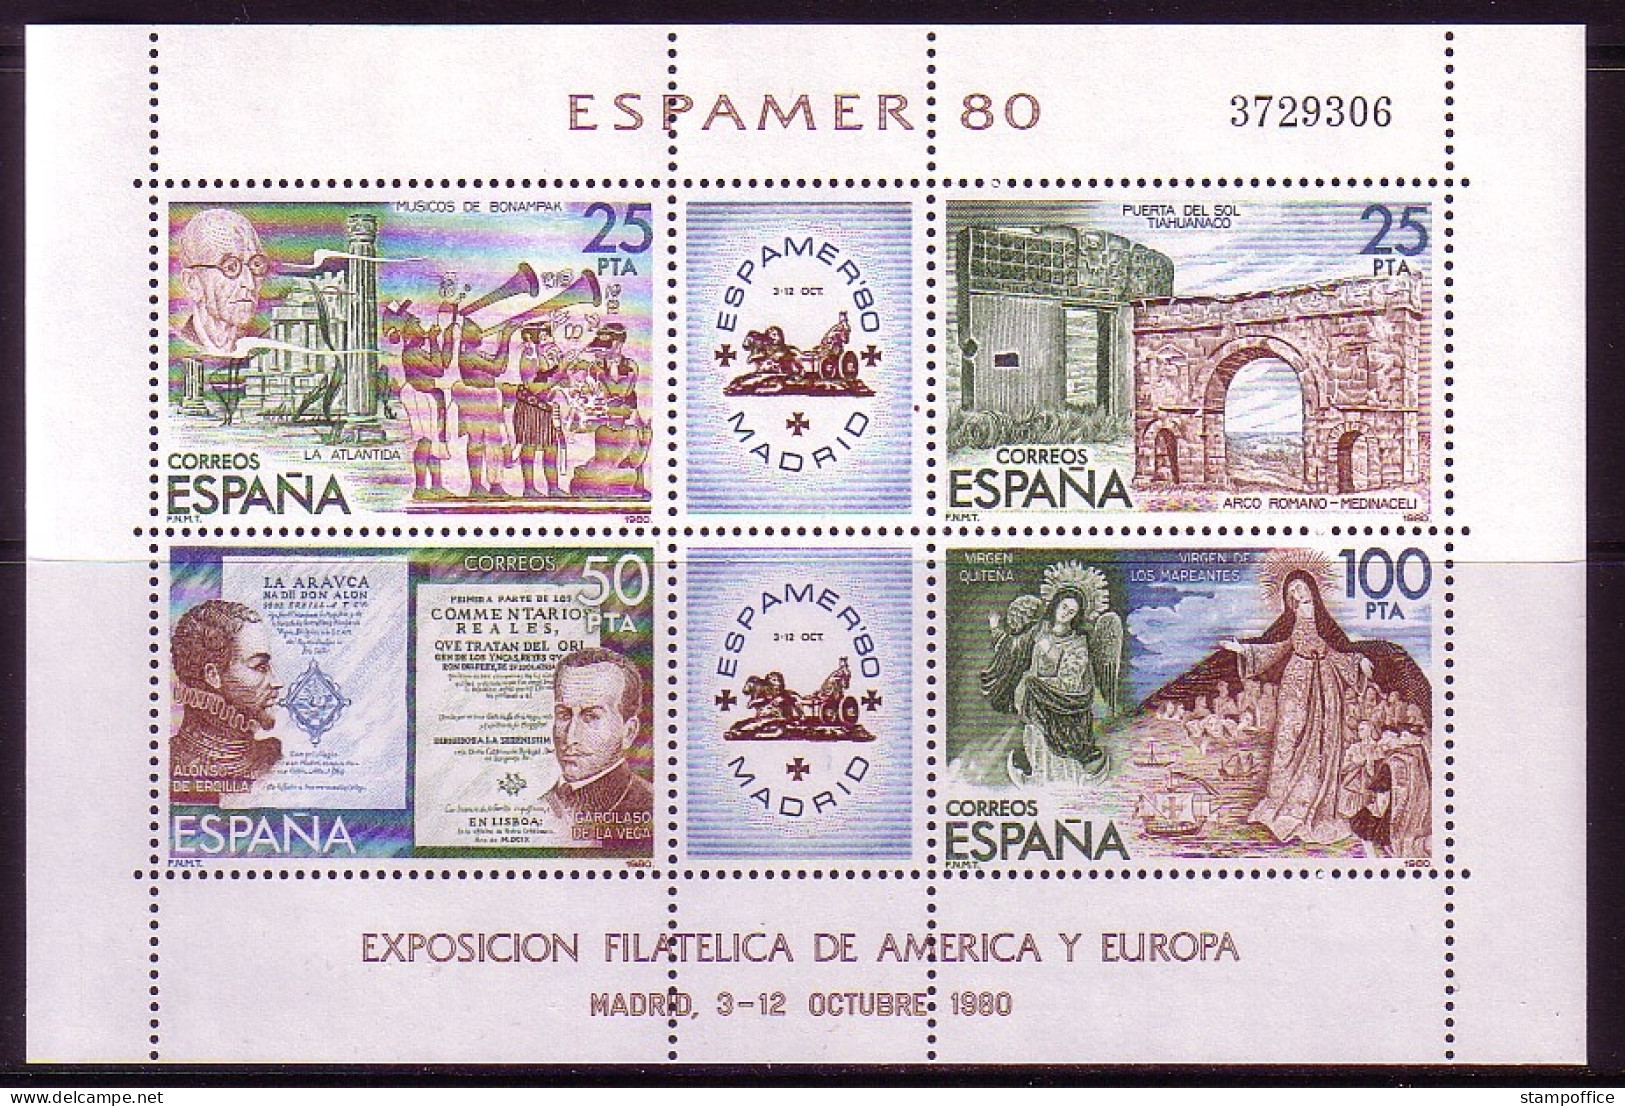 SPANIEN BLOCK 21 POSTFRISCH(MINT) ESPAMER '80 BRIEFMARKENAUSSTELLUNG MADRID MIT EINTRITTSKARTE - Blocks & Sheetlets & Panes